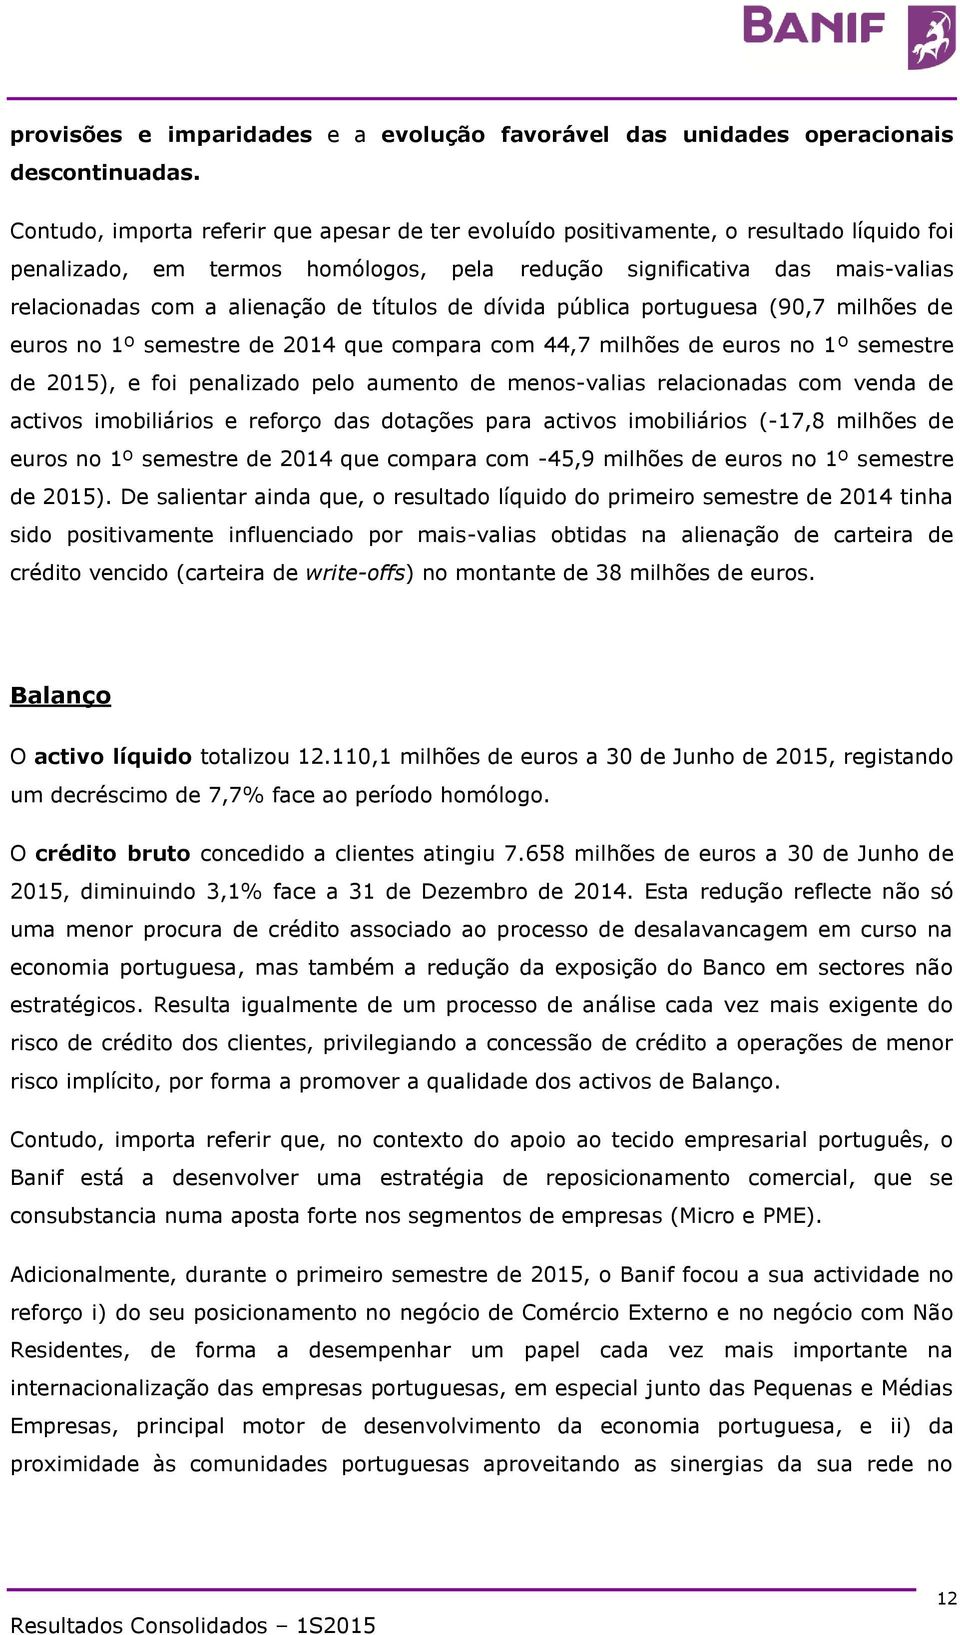 títulos de dívida pública portuguesa (90,7 milhões de euros no 1º semestre de 2014 que compara com 44,7 milhões de euros no 1º semestre de 2015), e foi penalizado pelo aumento de menos-valias